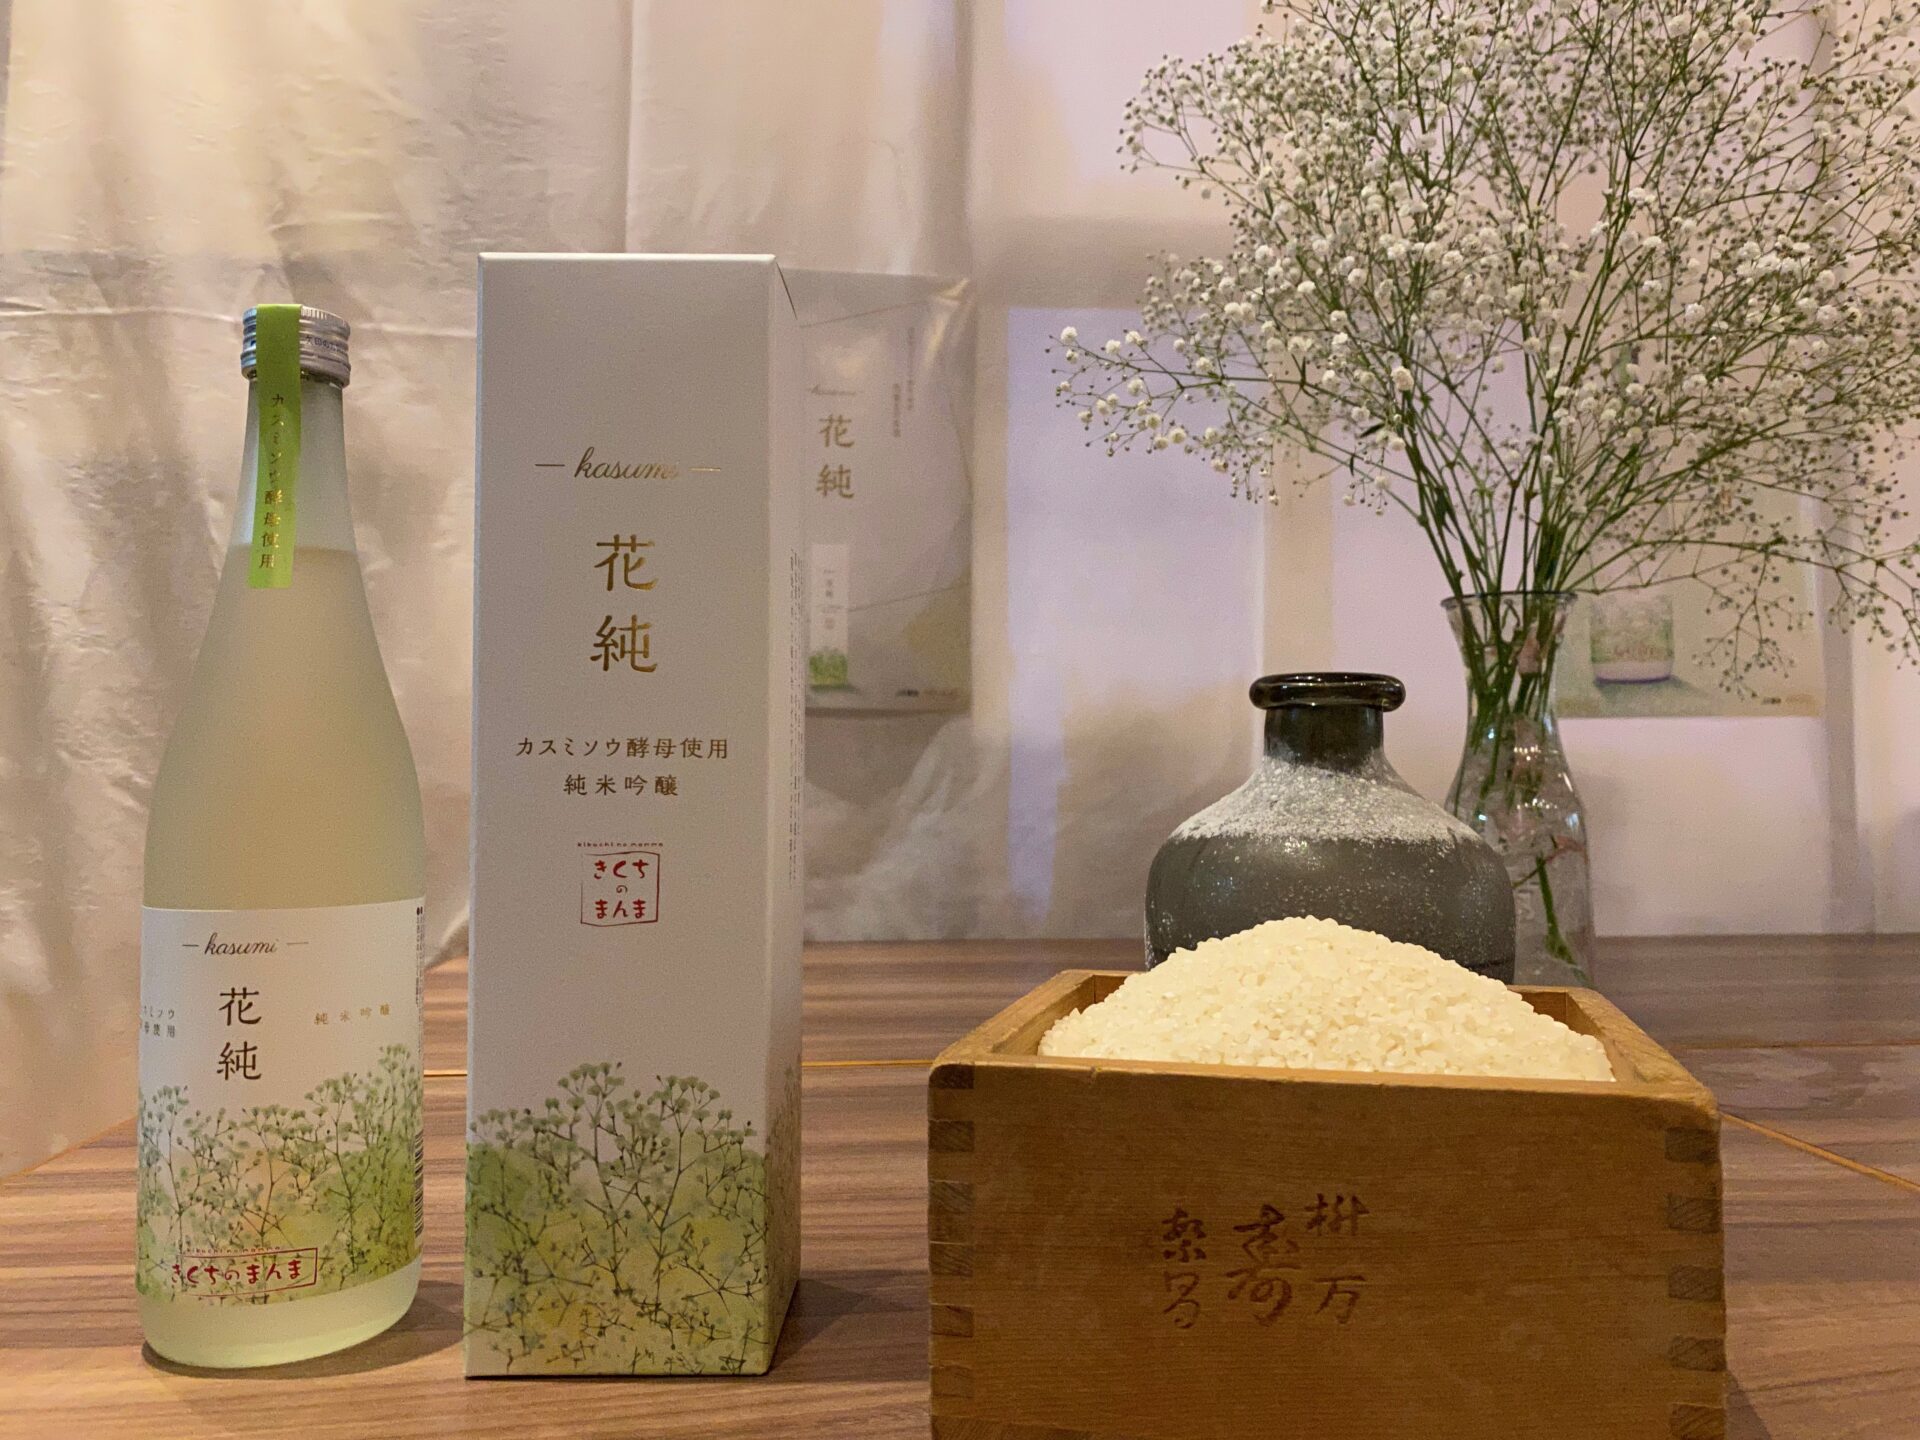 日本初！カスミソウ酵母の日本酒「花純」に関わる人が、皆すごすぎたからちょっと見てほしい。